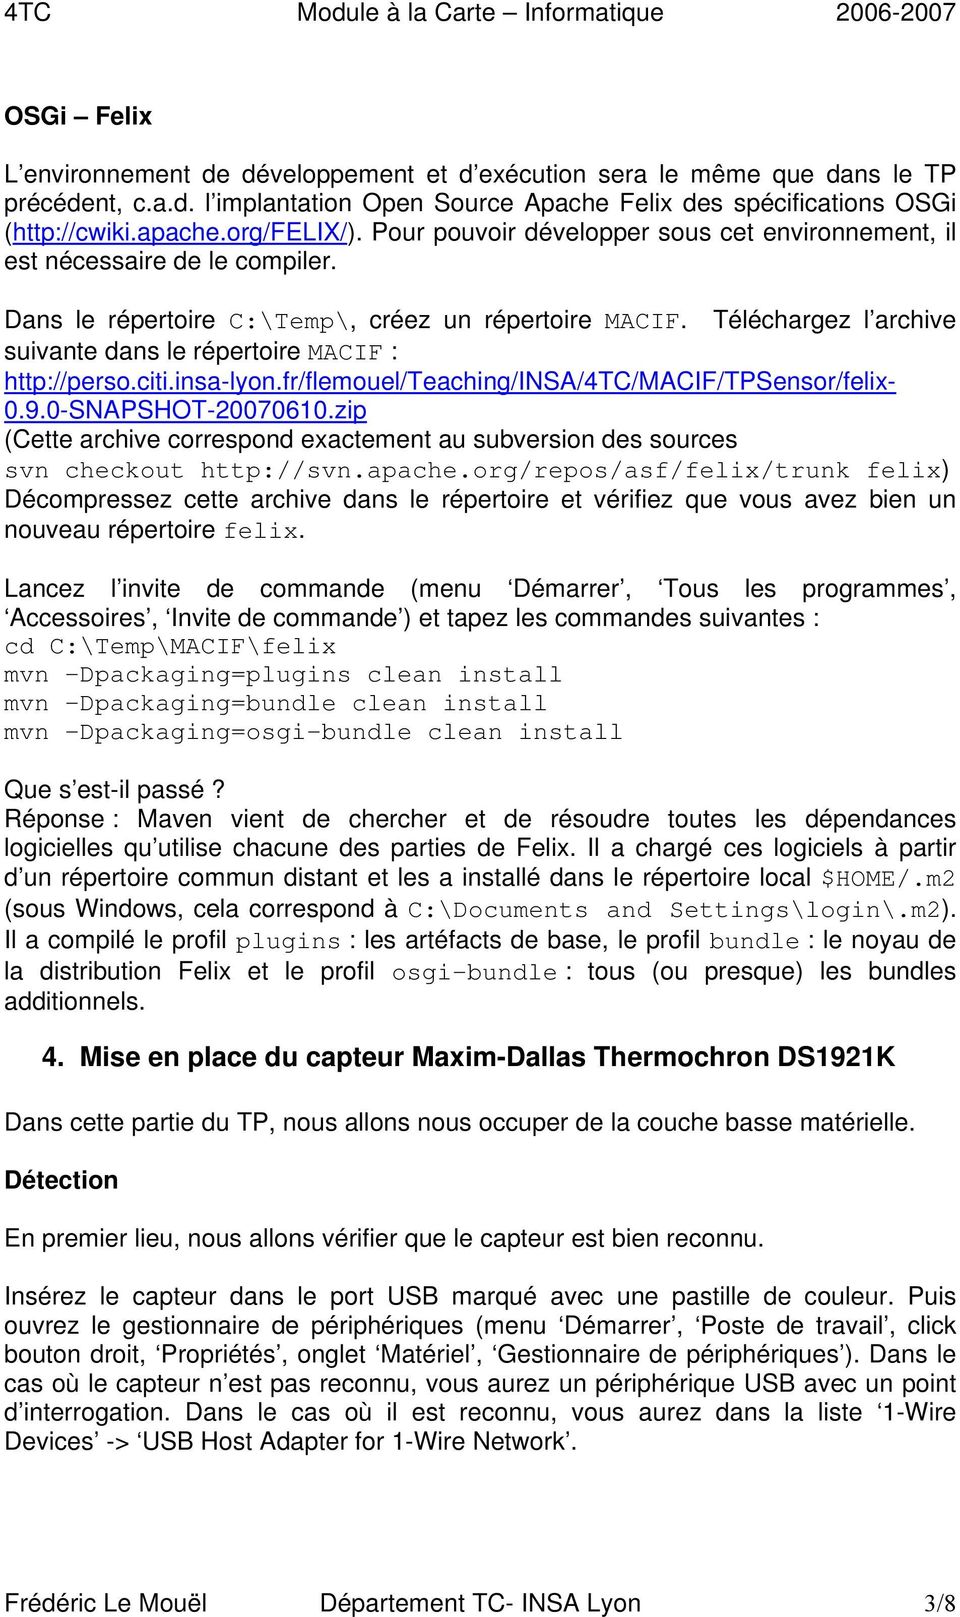 Téléchargez l archive suivante dans le répertoire MACIF : http://perso.citi.insa-lyon.fr/flemouel/teaching/insa/4tc/macif/tpsensor/felix- 0.9.0-SNAPSHOT-20070610.